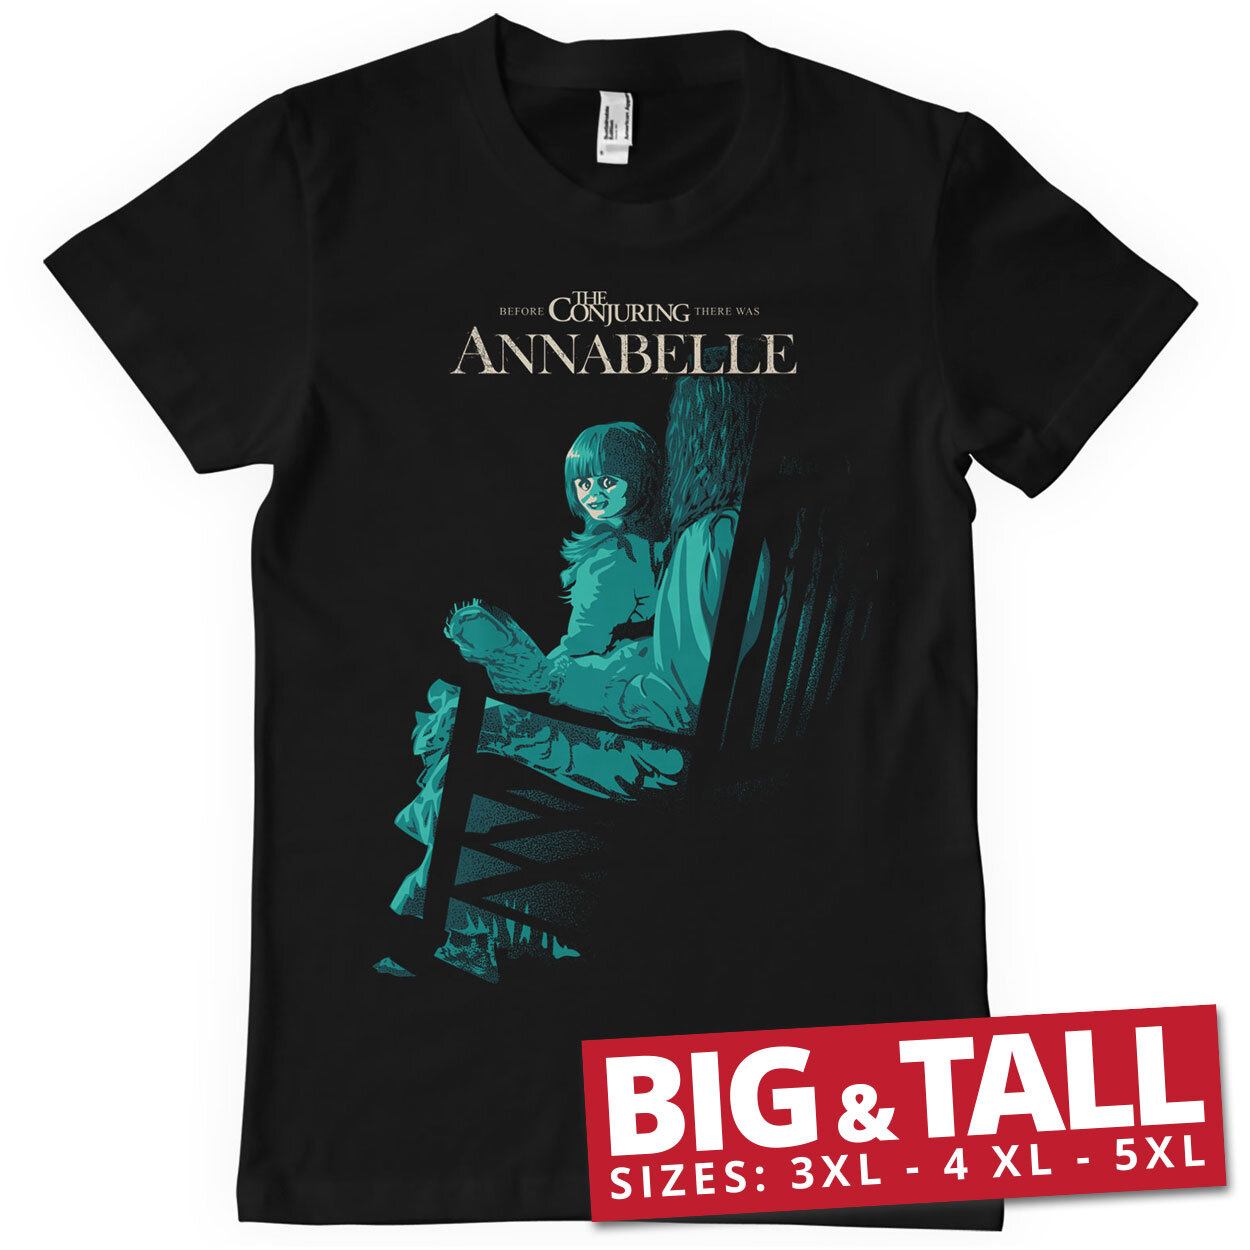 Annabelle Big & Tall T-Shirt